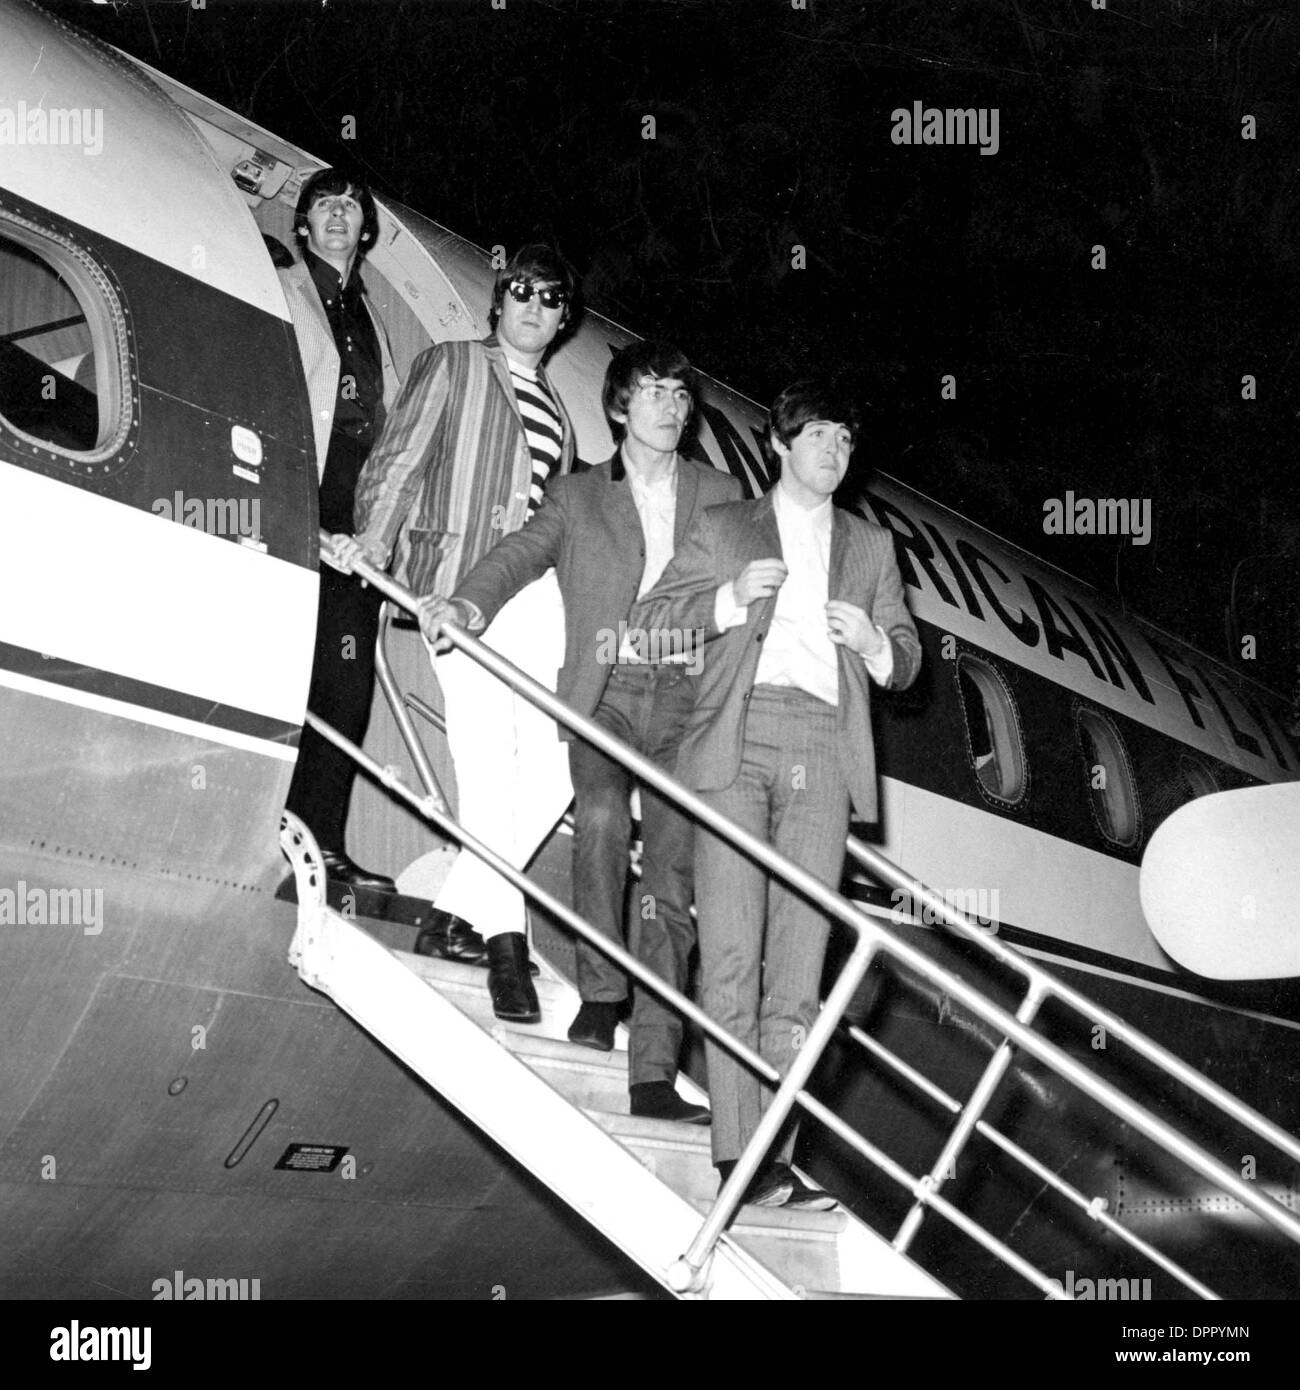 Le 27 novembre 2006 - LES BEATLES.Ringo Starr, JOHN LENNON, GEORGE HARRISON ET PAUL MCCARTNEY. Crédit photos(Image : © Photos Globe/ZUMAPRESS.com) Banque D'Images